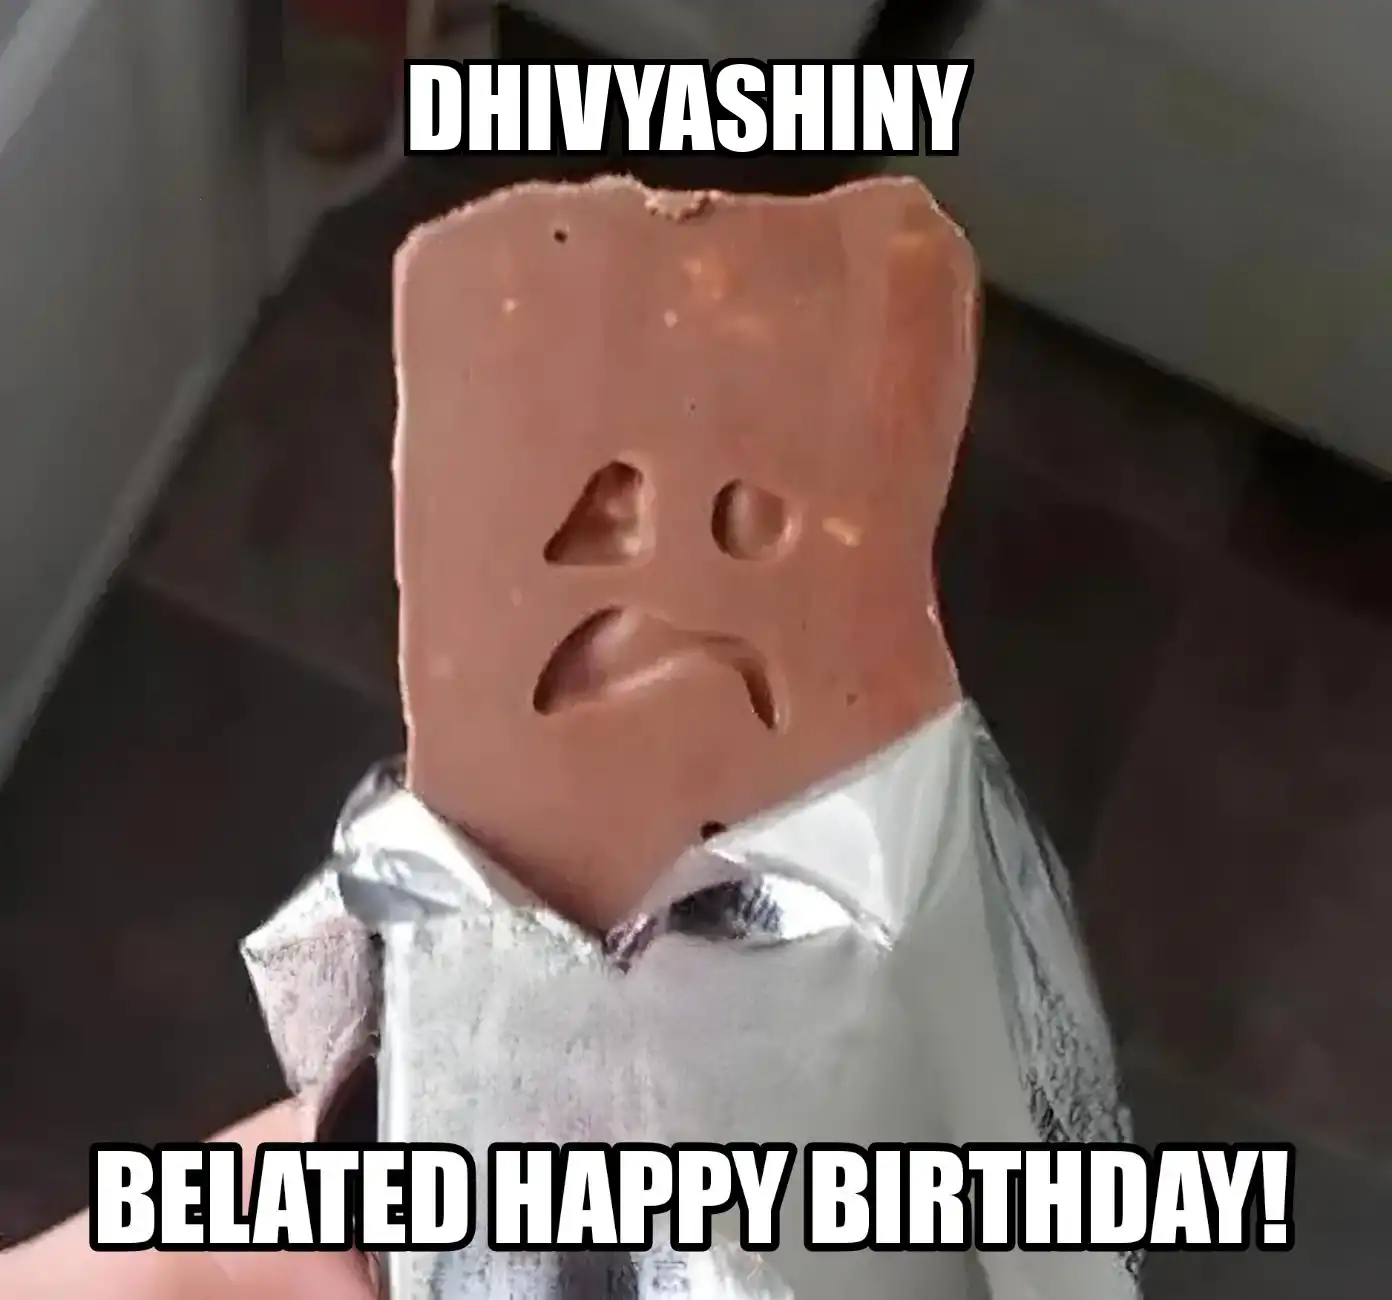 Happy Birthday Dhivyashiny Belated Happy Birthday Meme